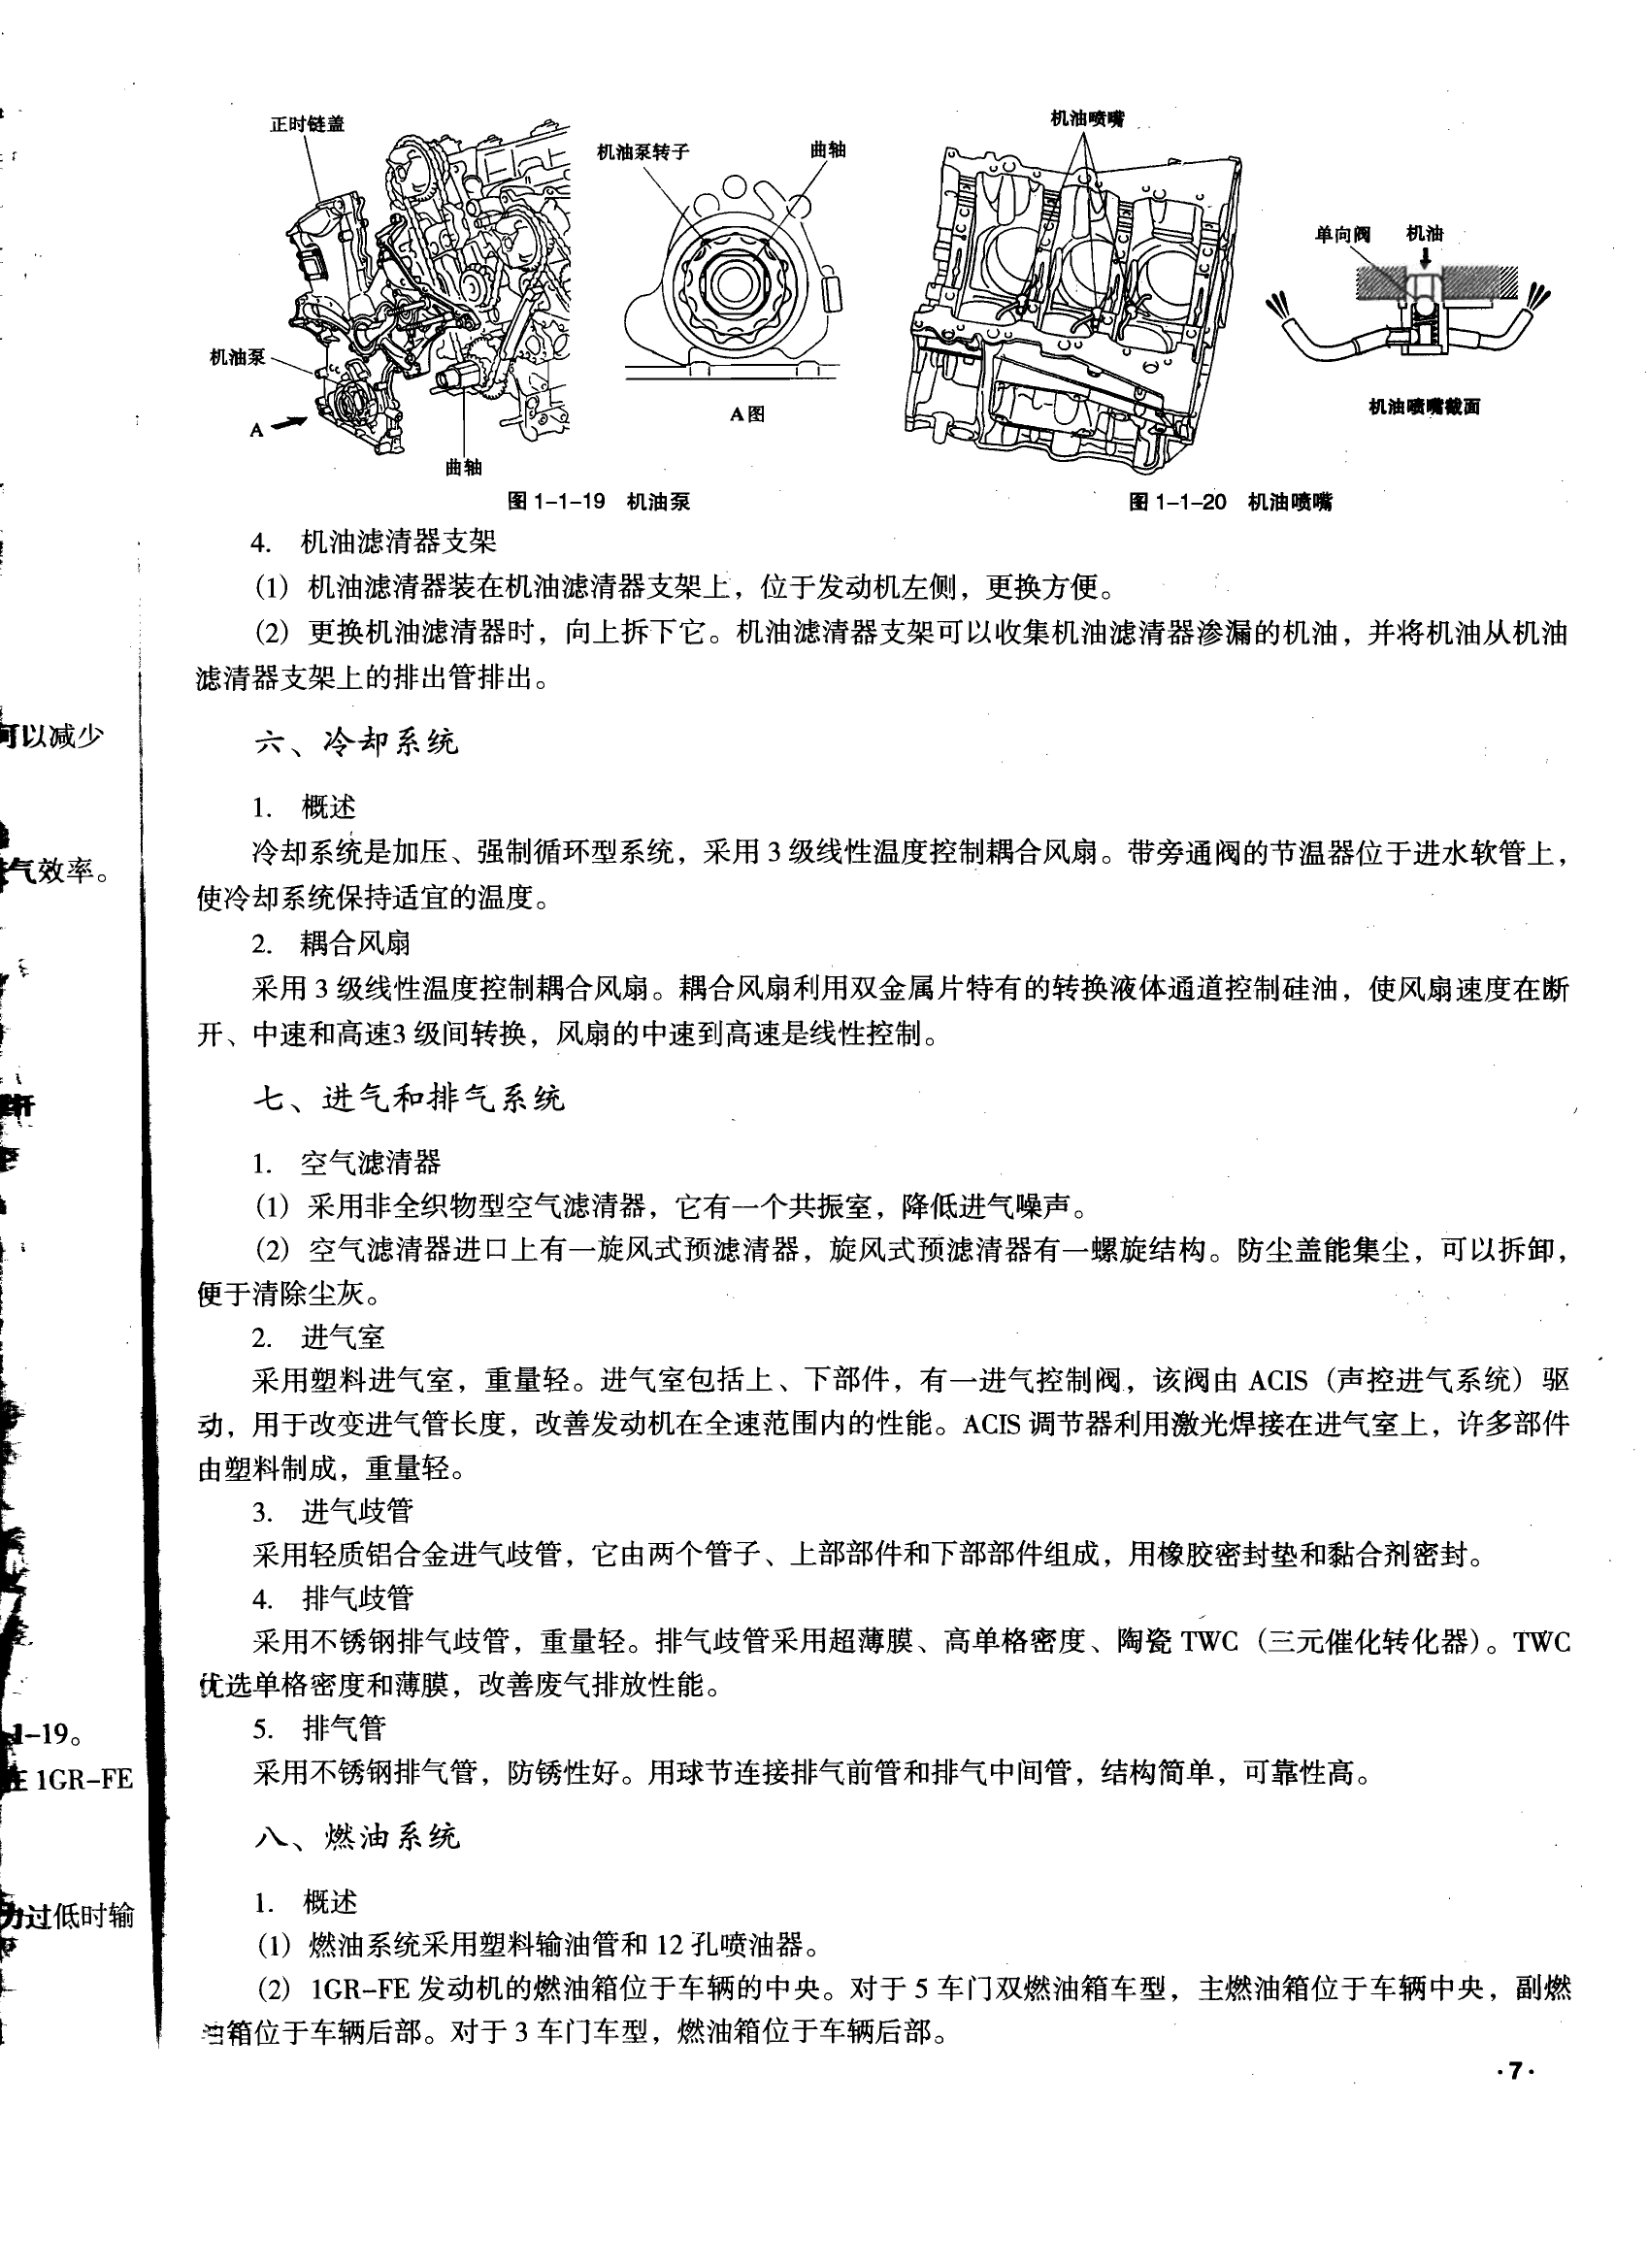 丰田霸道4000和陆地巡洋舰4700汽车维修手册 完全版 (2).pdf-第8页.png